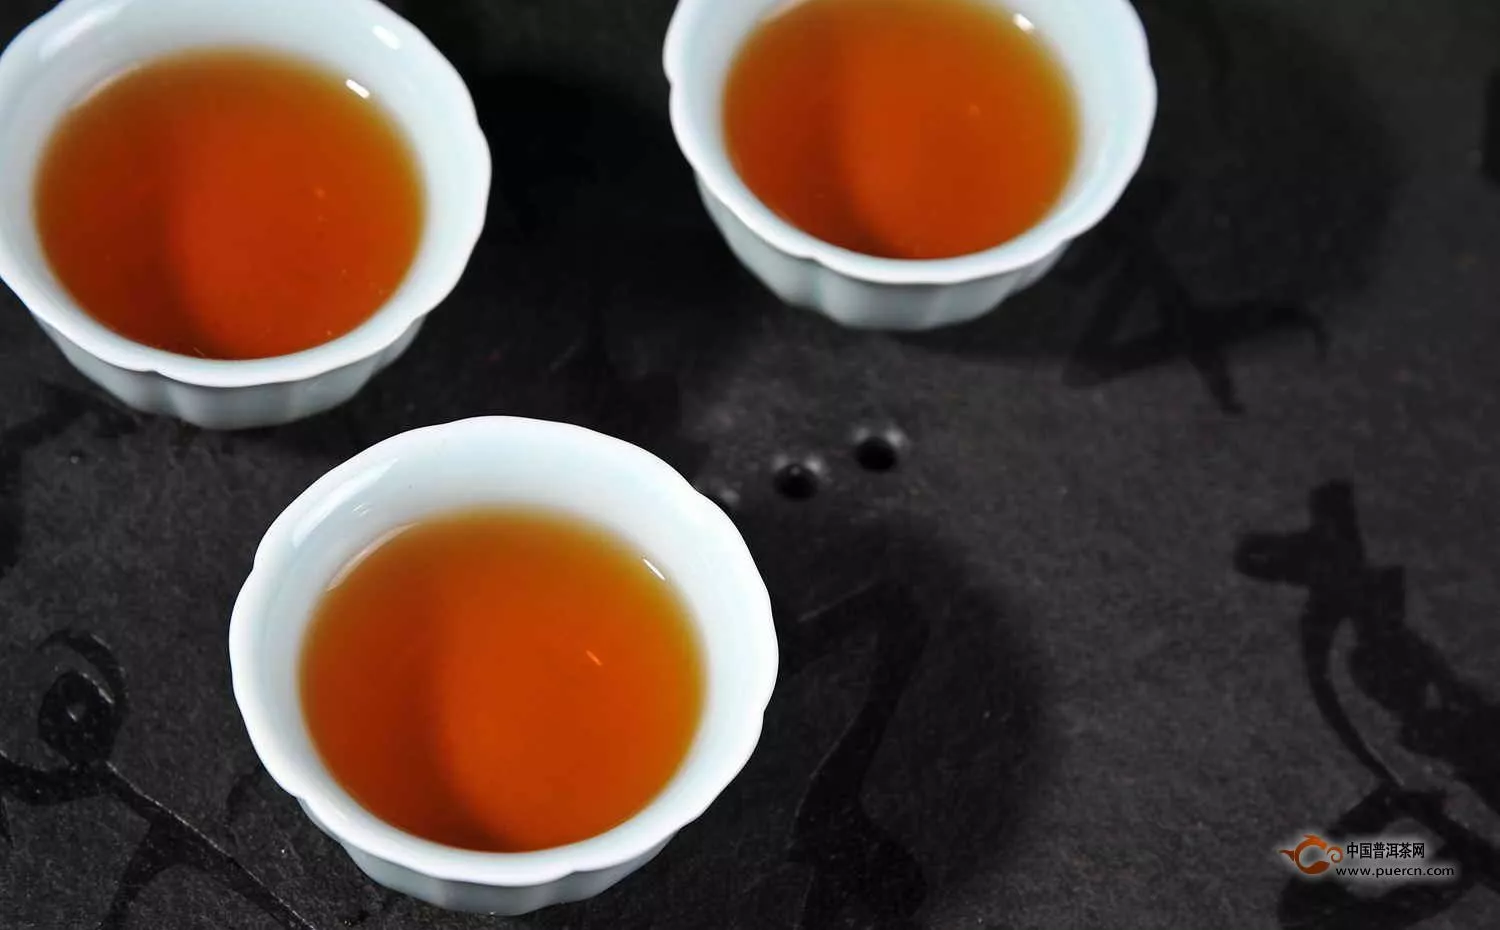 祁门红茶的自然品质以黄山市祁门县为最优